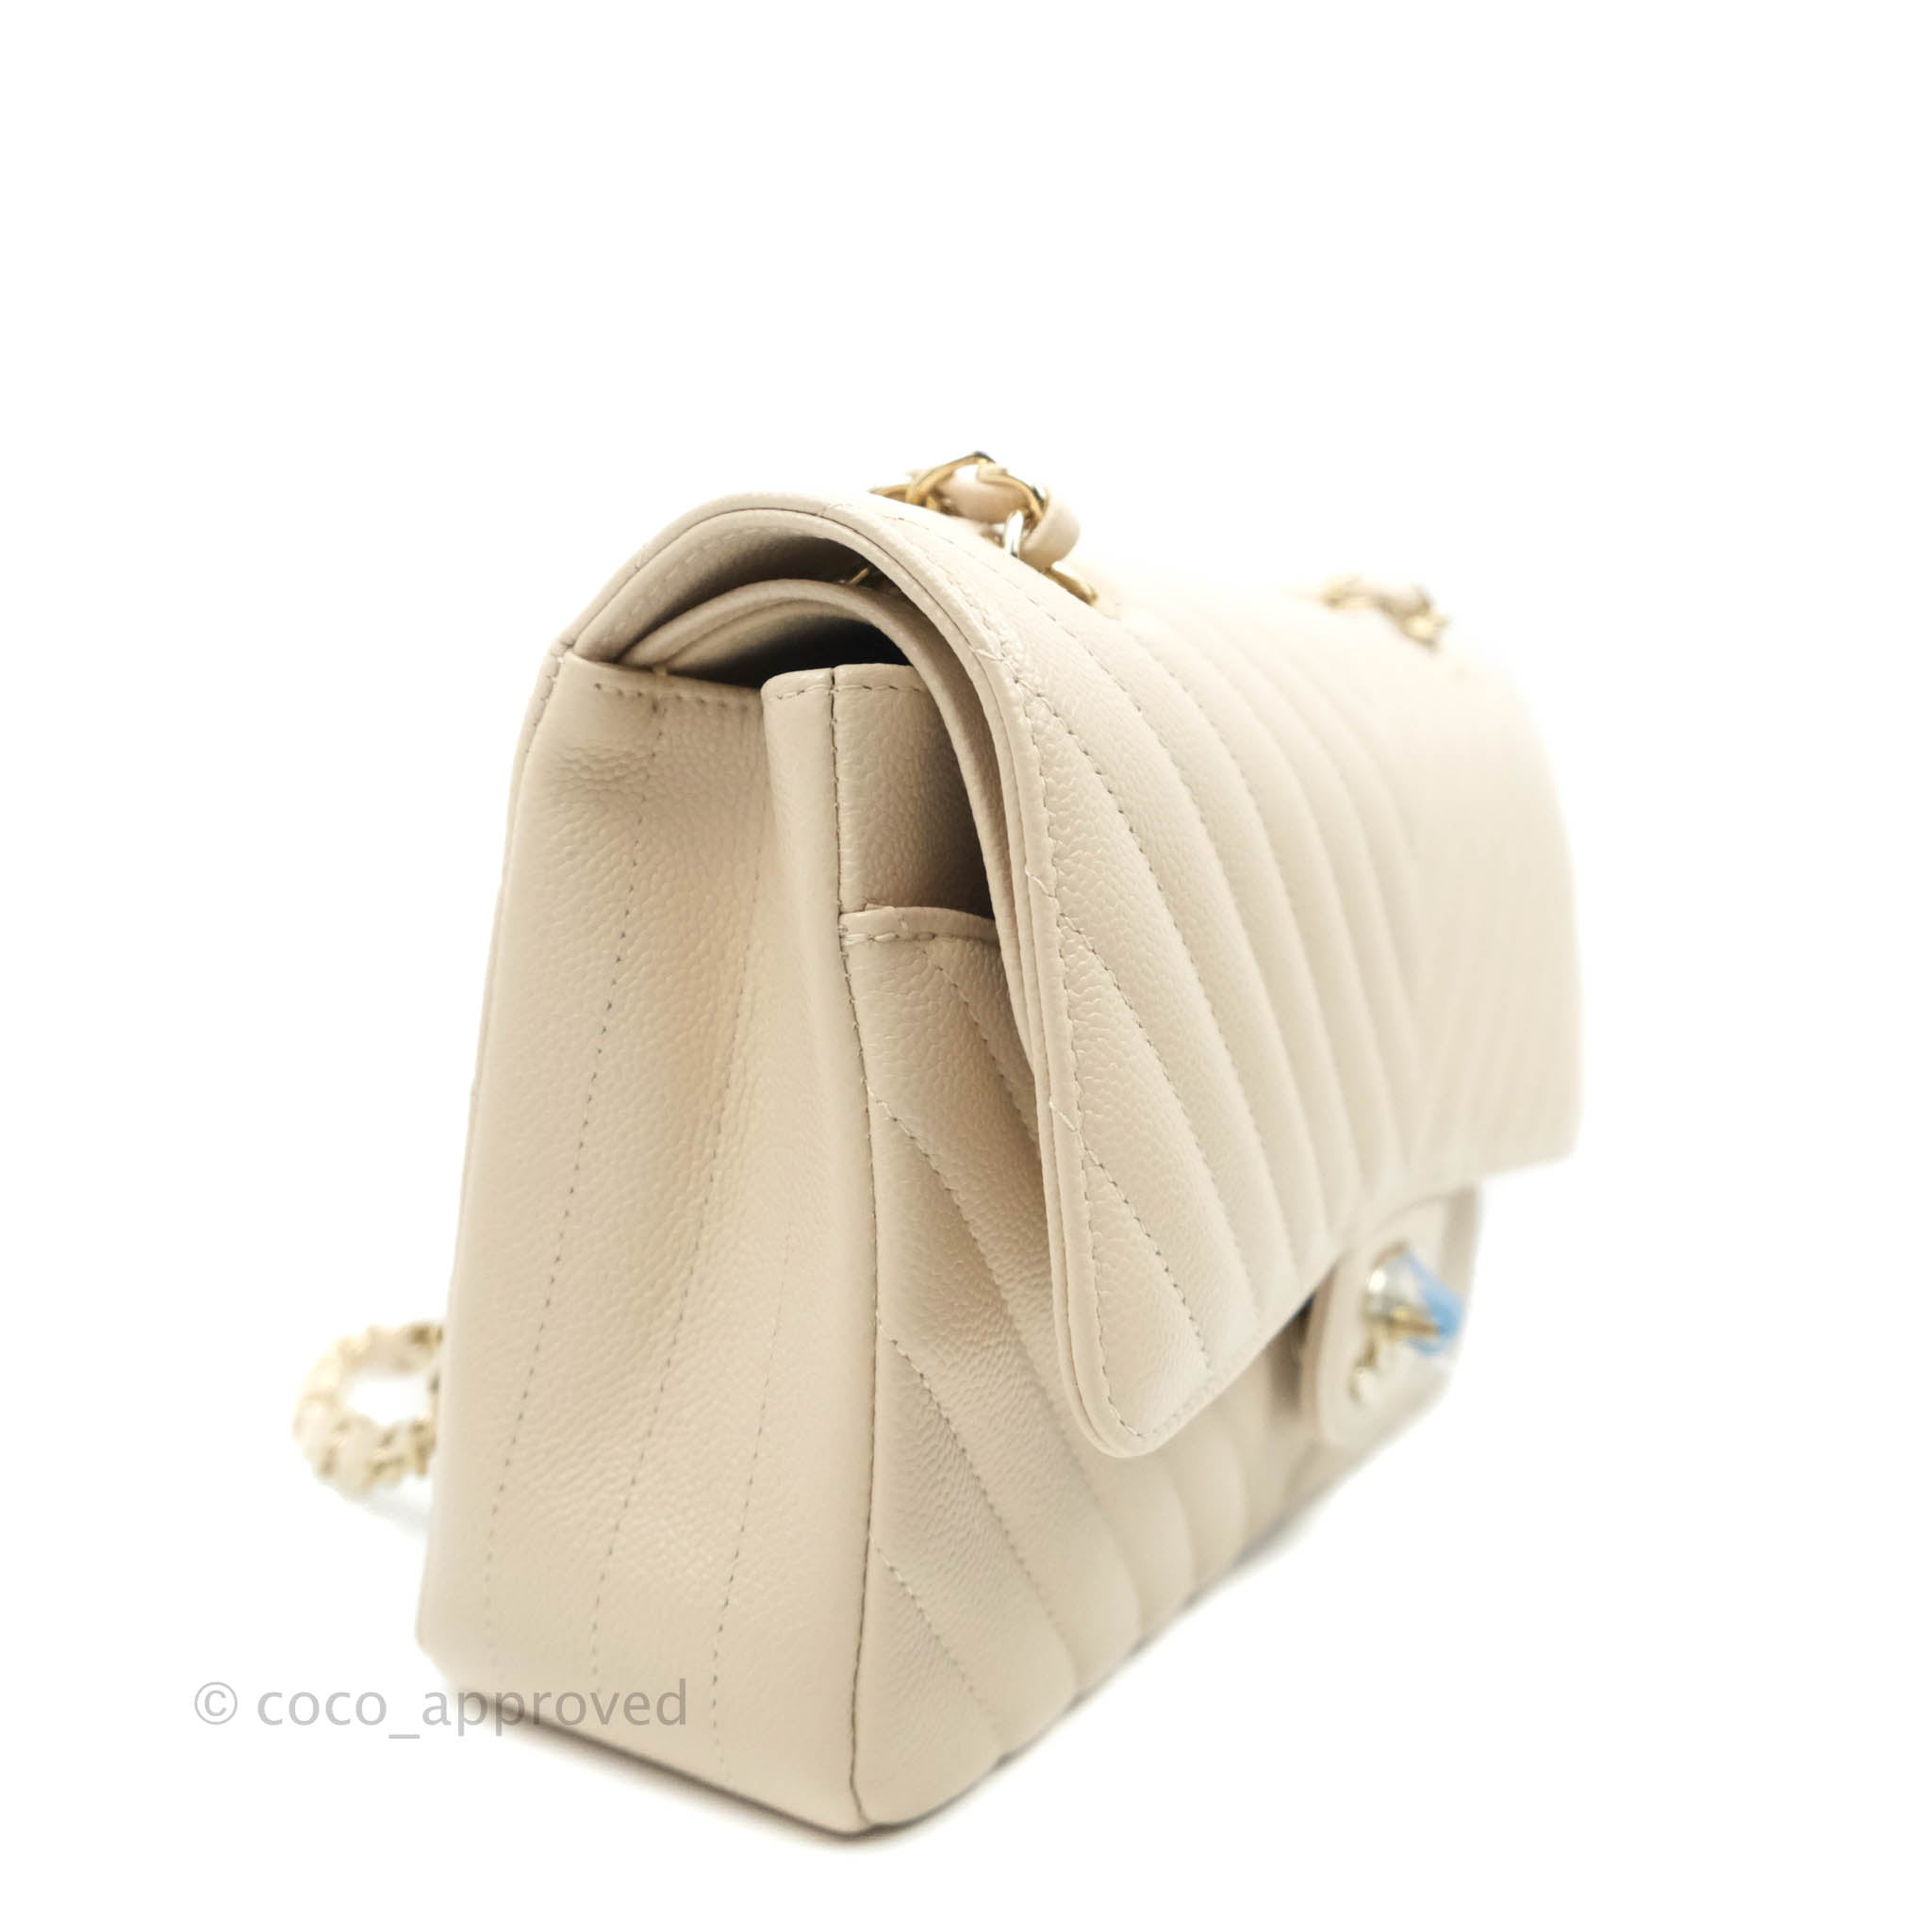 Chanel Classic Double Zip WOC  SacMaison ~ branded luxury